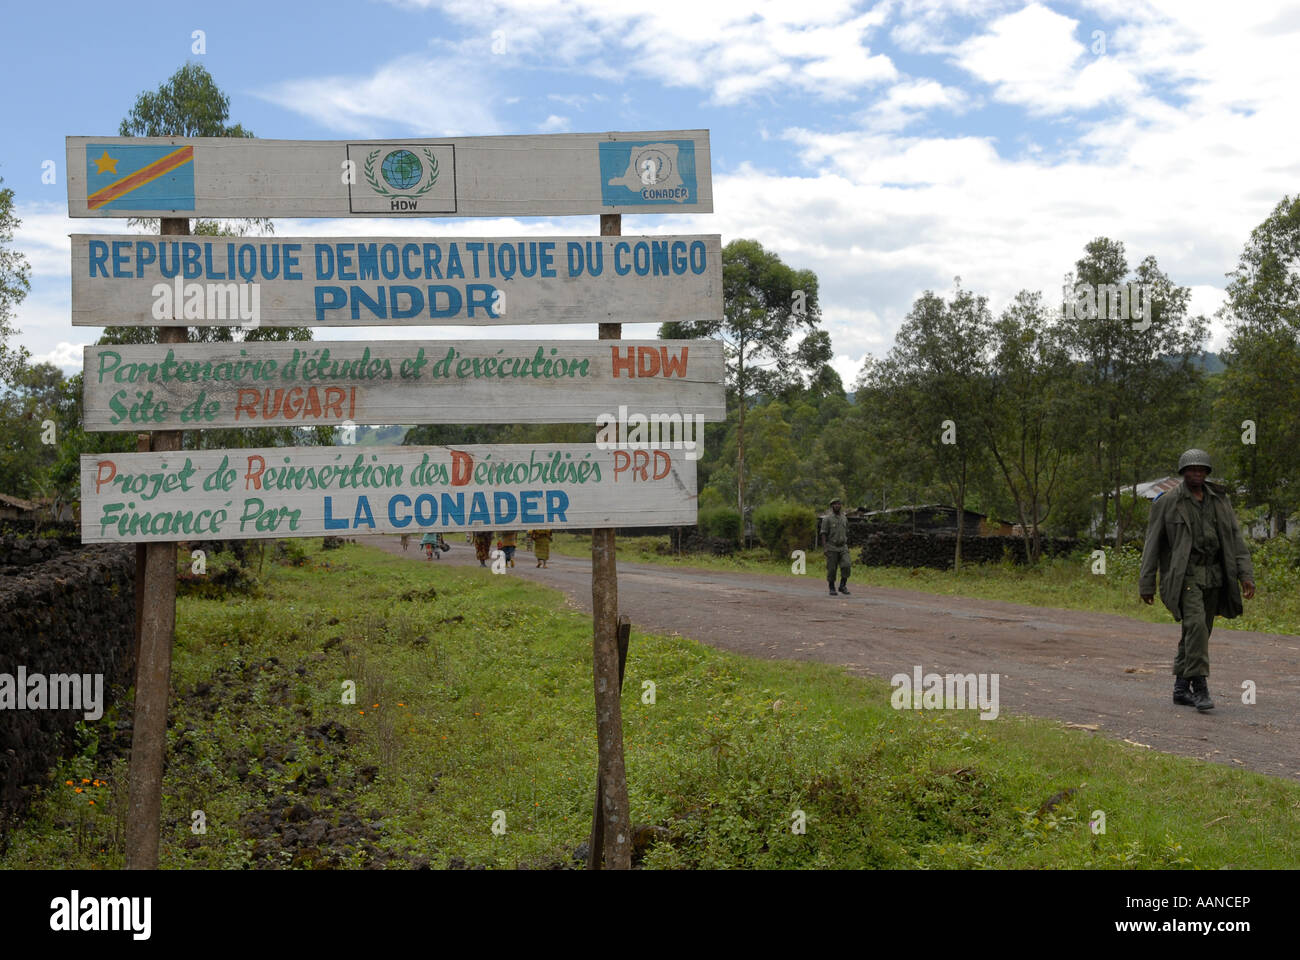 Les soldats du gouvernement congolais des FARDC marchent devant un panneau mentionnant le projet humanitaire PNDDR dans une zone rurale de la province du Nord-Kivu en RD Congo Afrique Banque D'Images